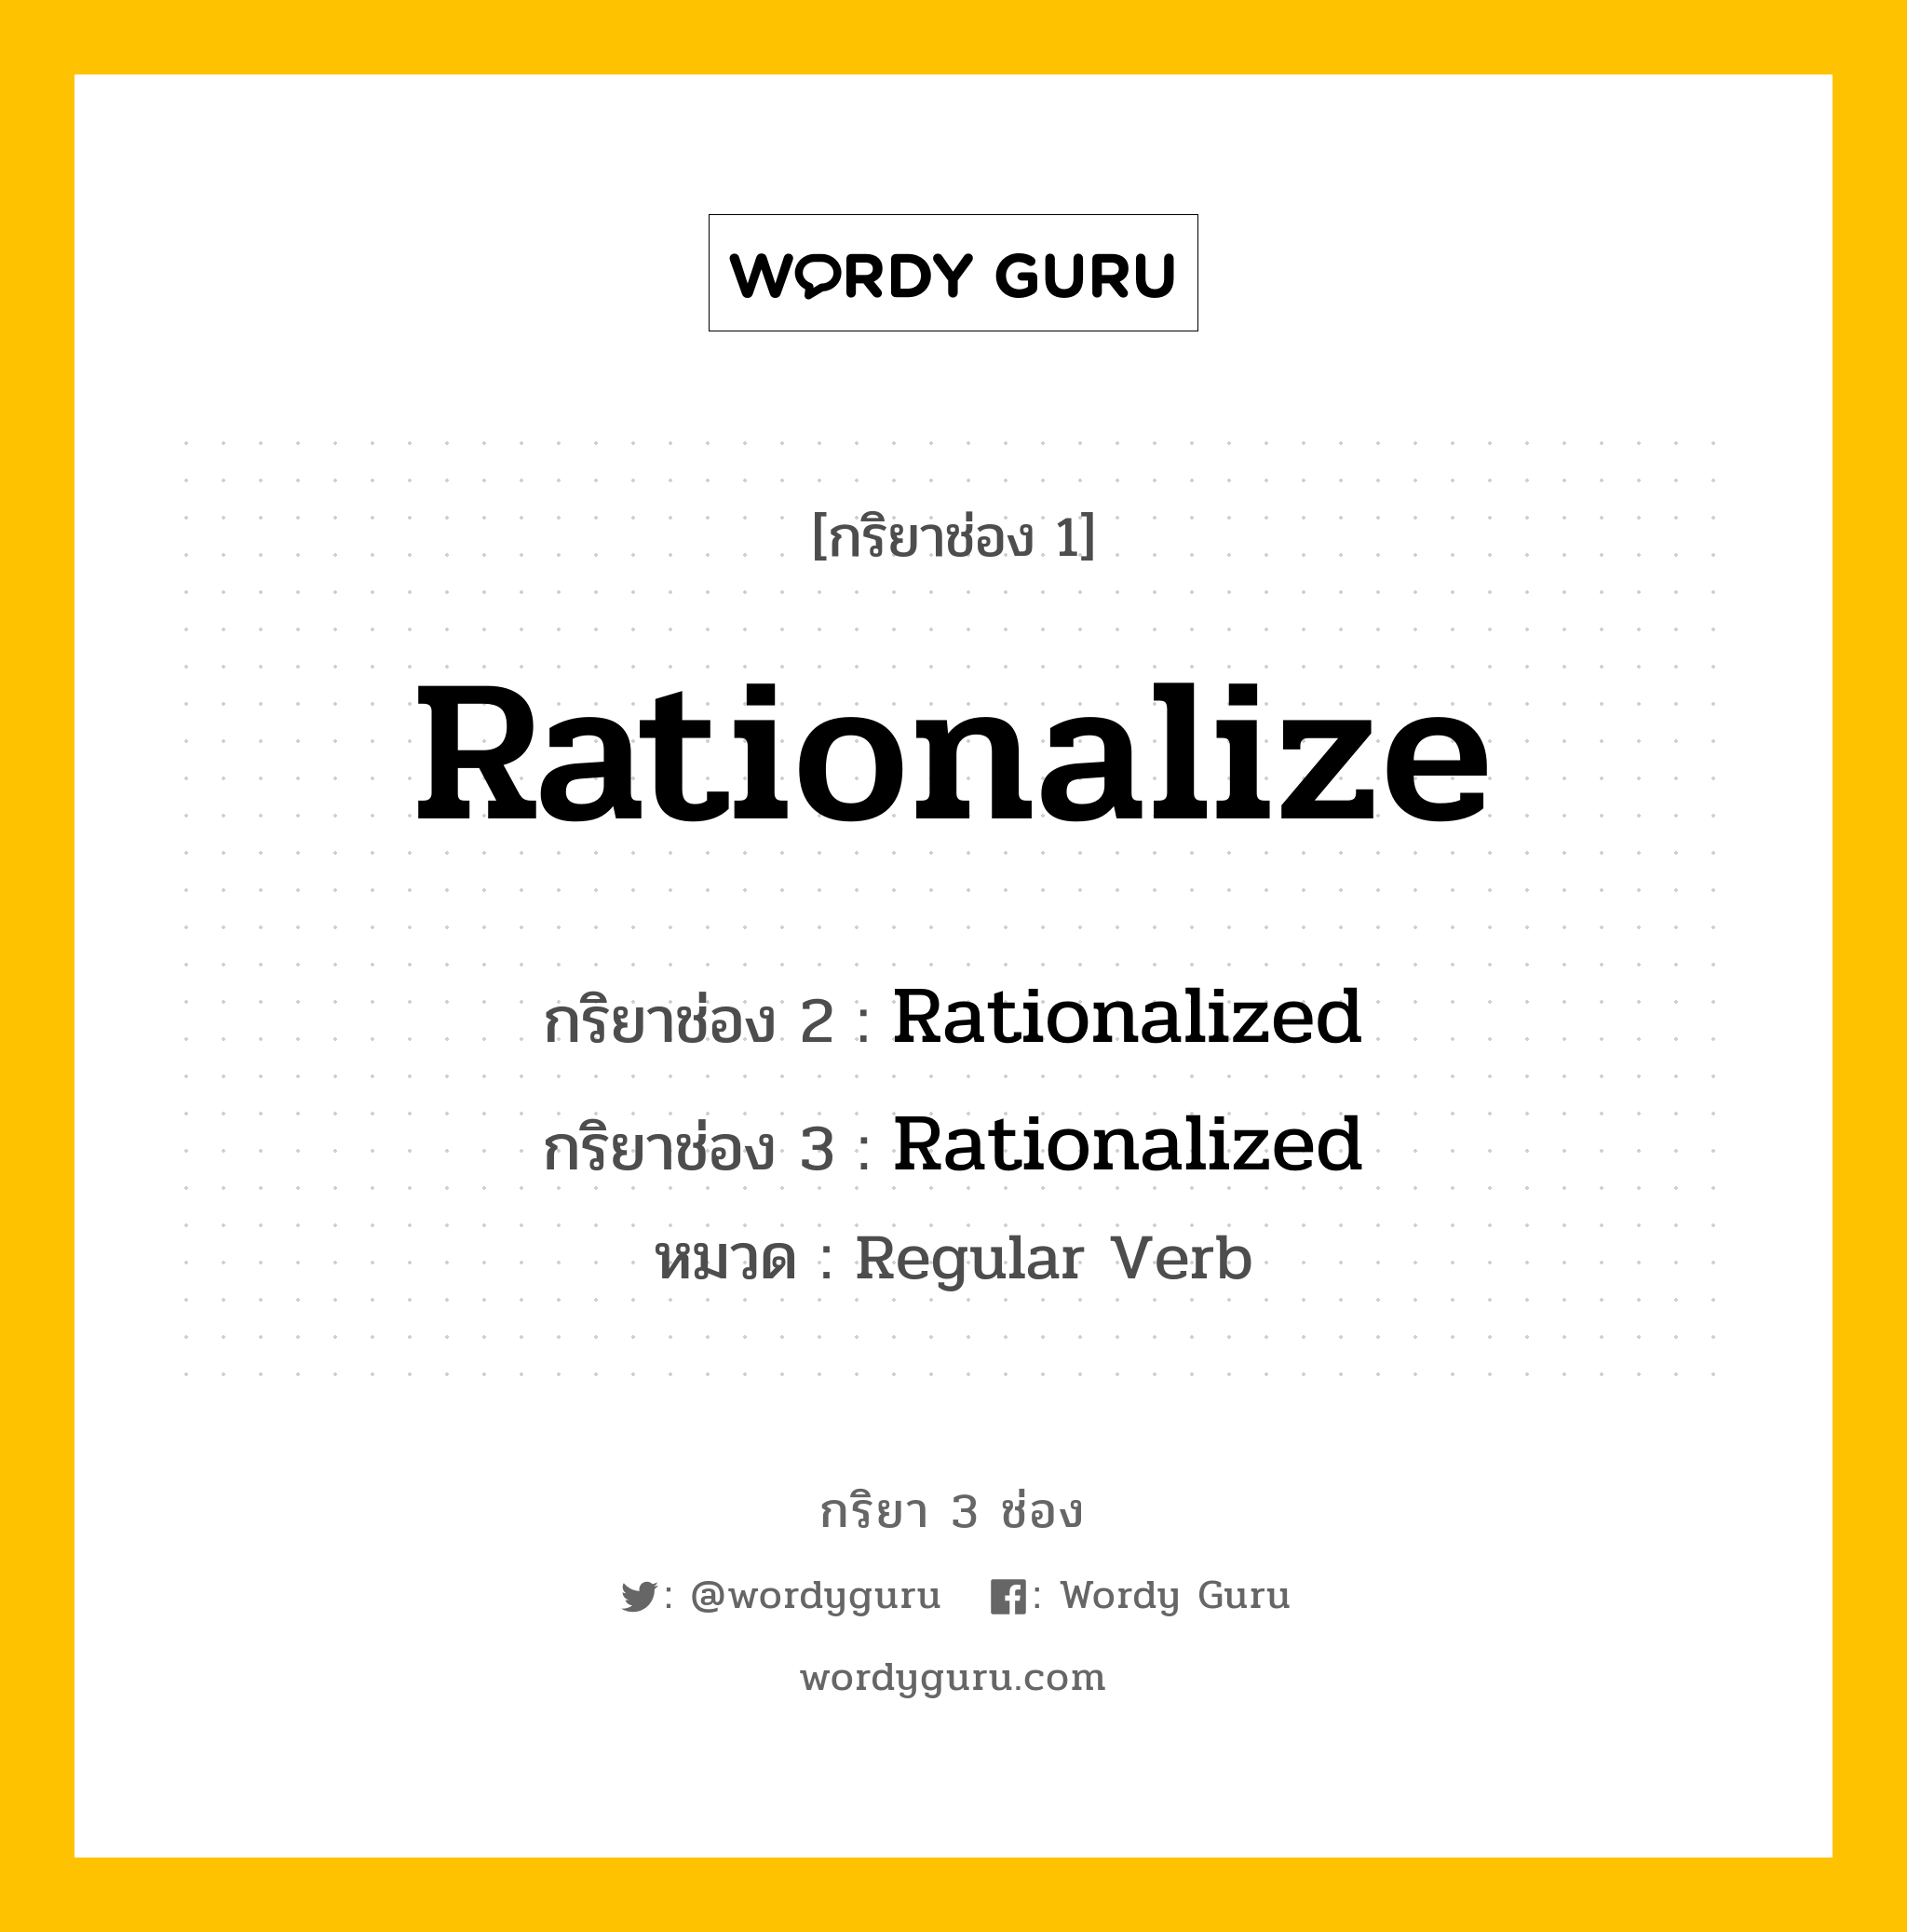 กริยา 3 ช่อง: Rationalize ช่อง 2 Rationalize ช่อง 3 คืออะไร, กริยาช่อง 1 Rationalize กริยาช่อง 2 Rationalized กริยาช่อง 3 Rationalized หมวด Regular Verb หมวด Regular Verb